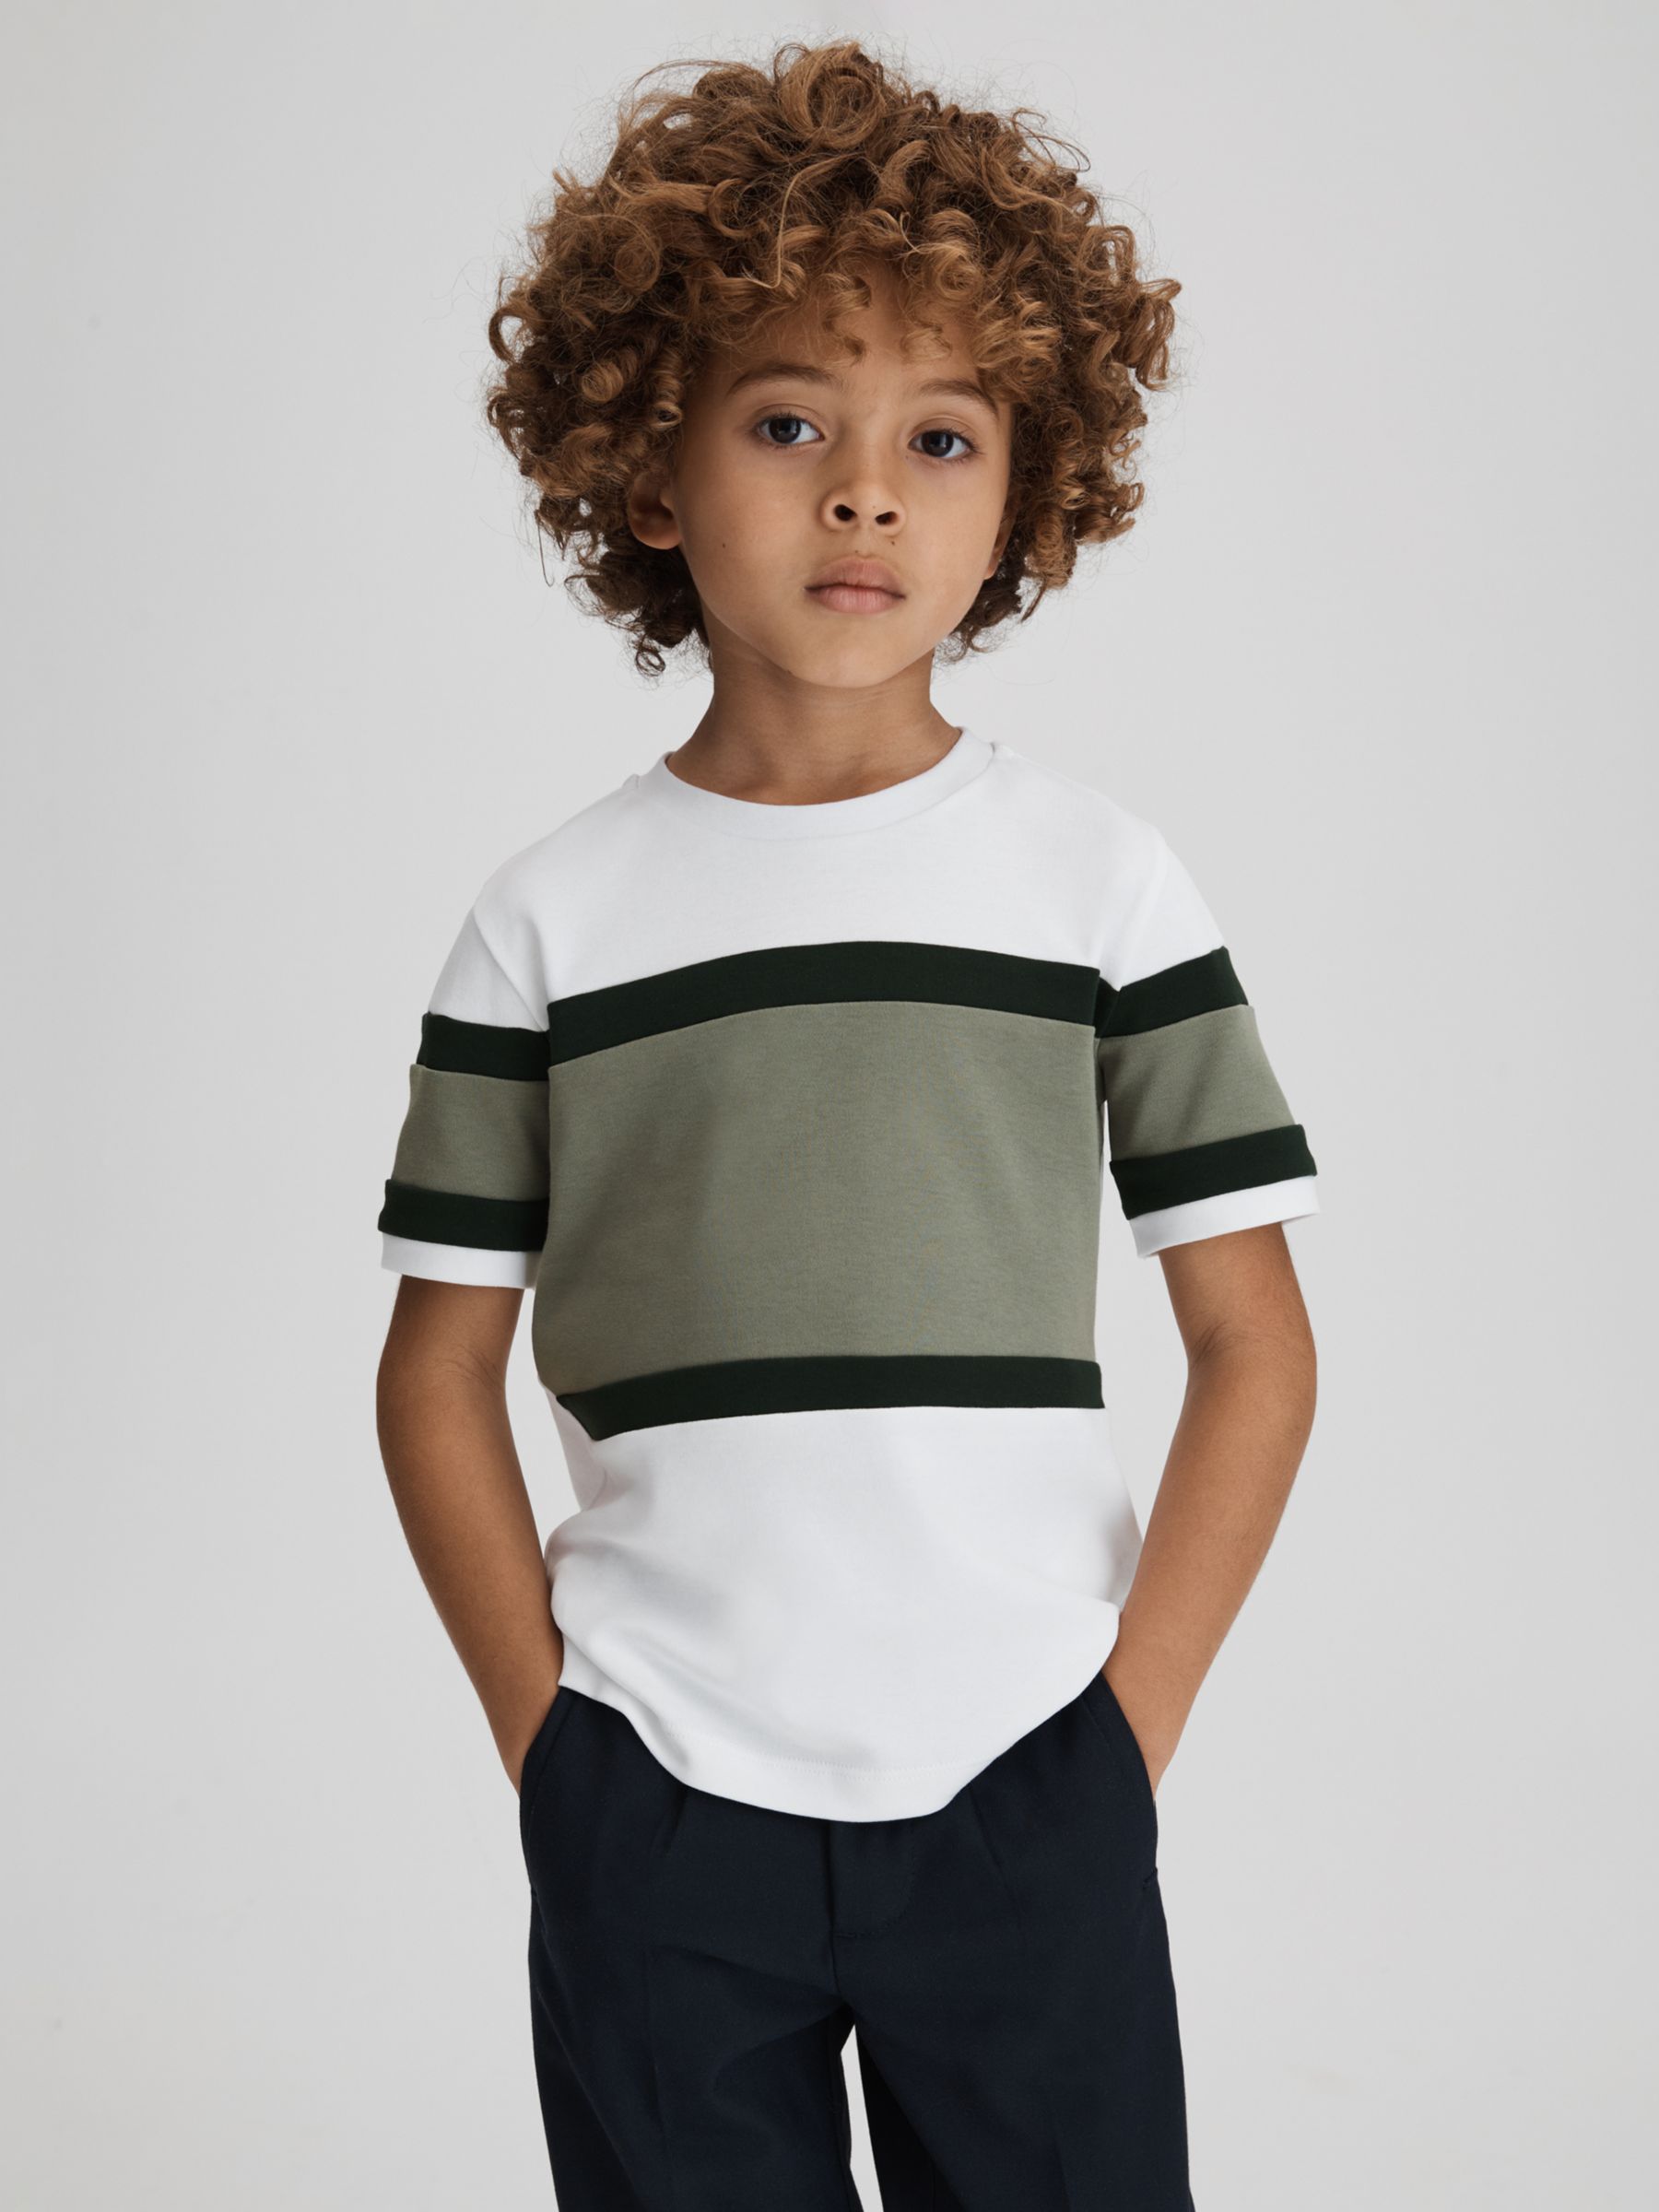 Reiss Kids' Auckland Short Sleeve Crew Neck T-Shirt, Green, 7-8 years